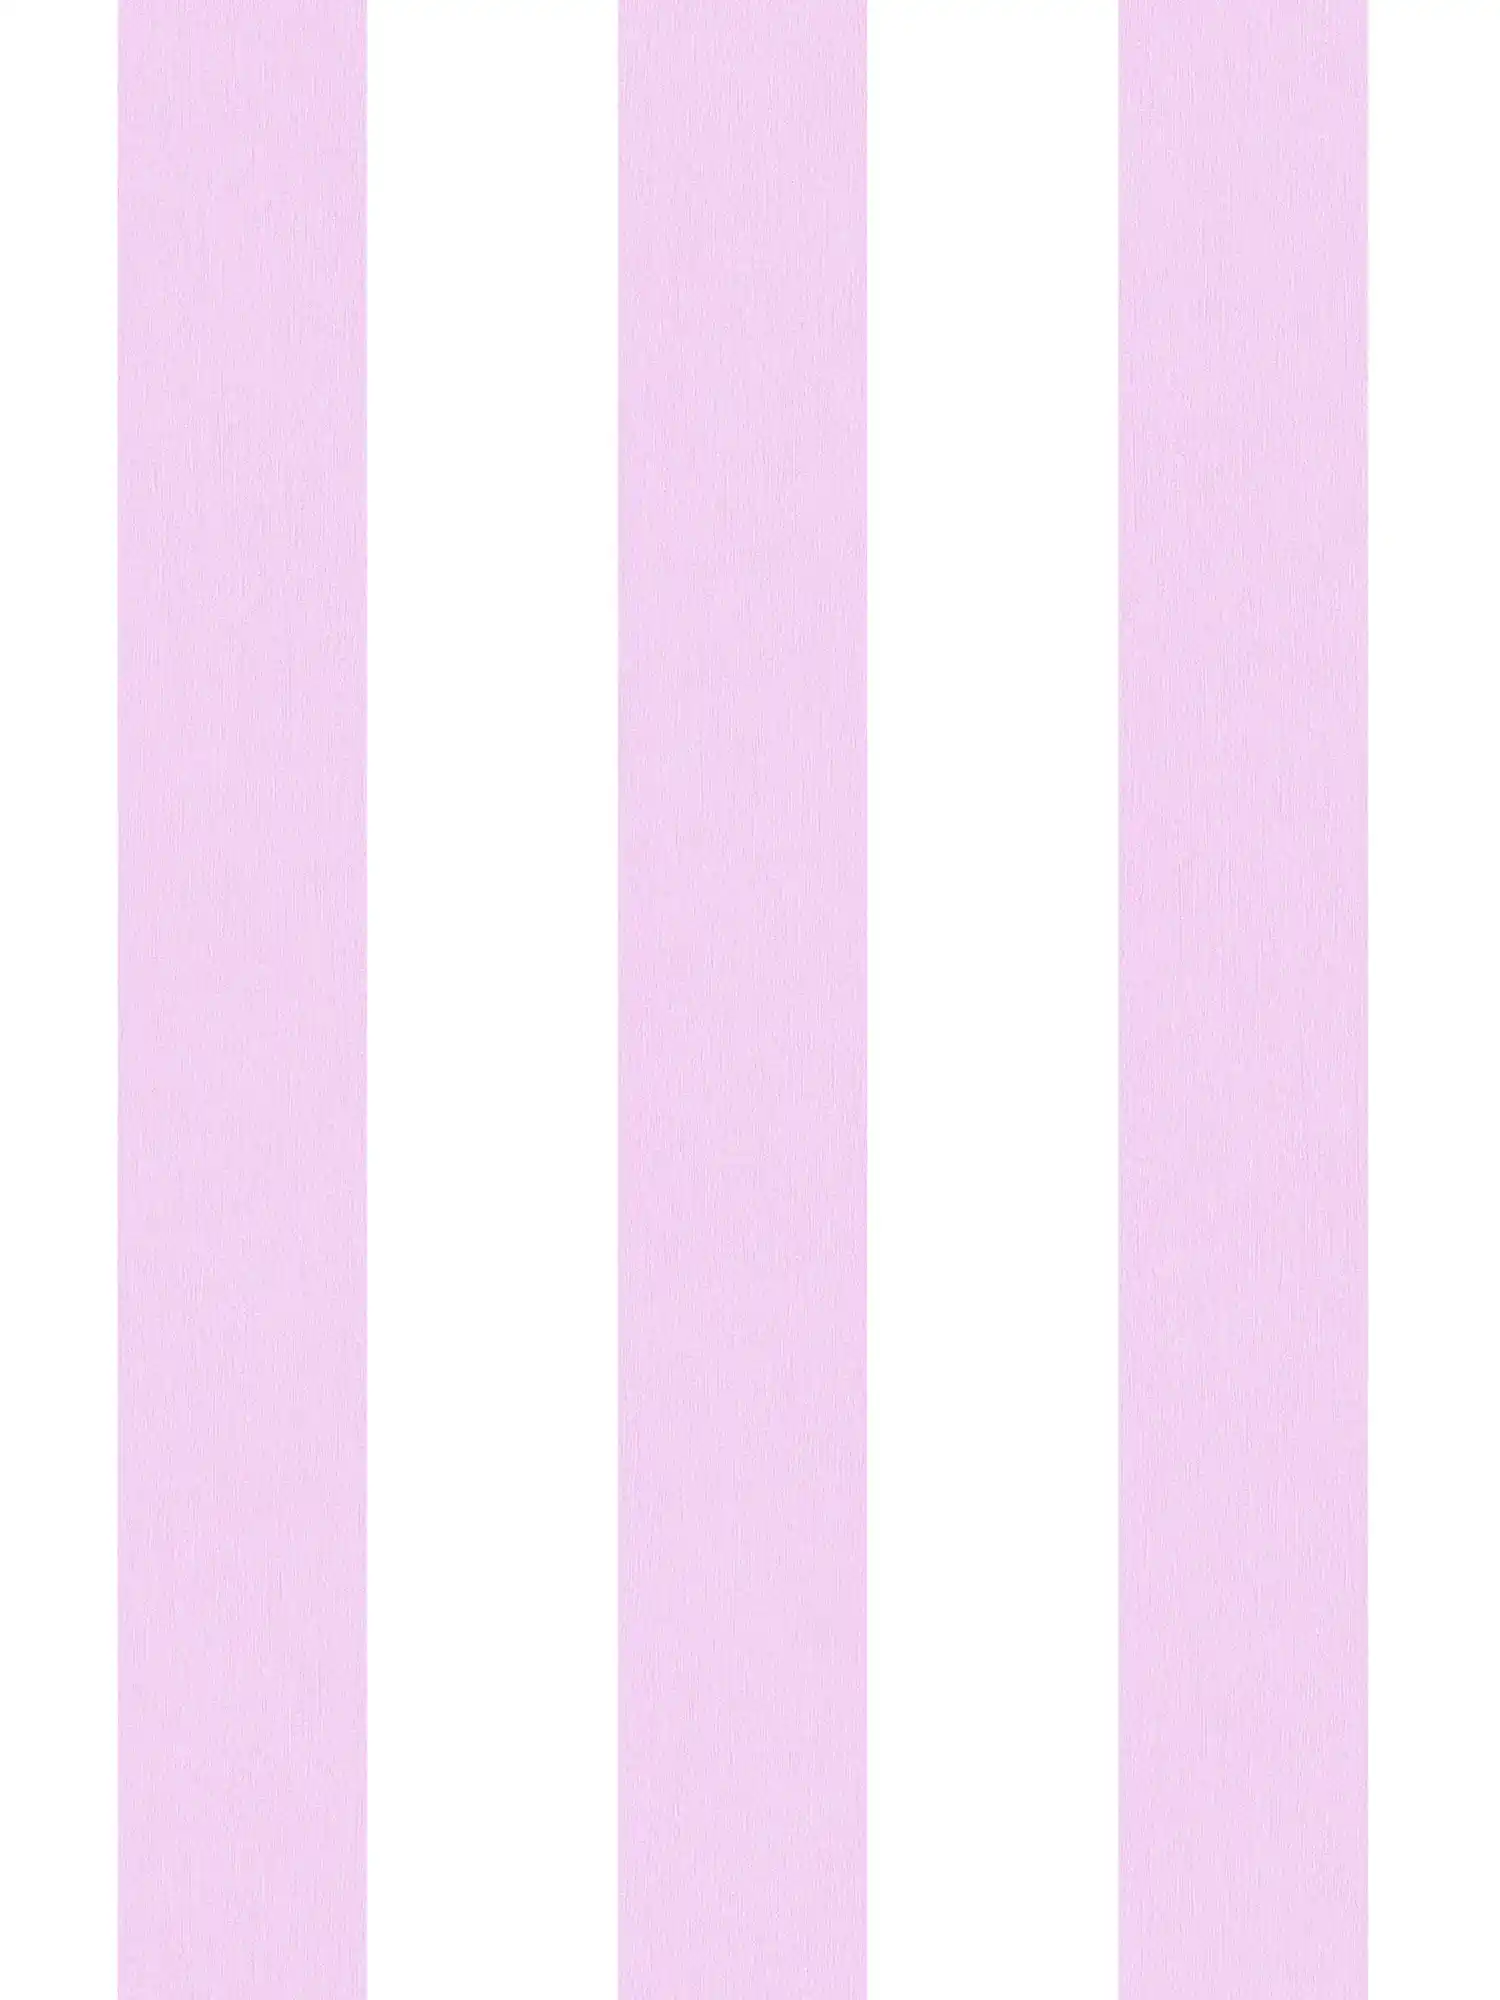 Wallpaper nursery girl vertical stripes - pink, white
